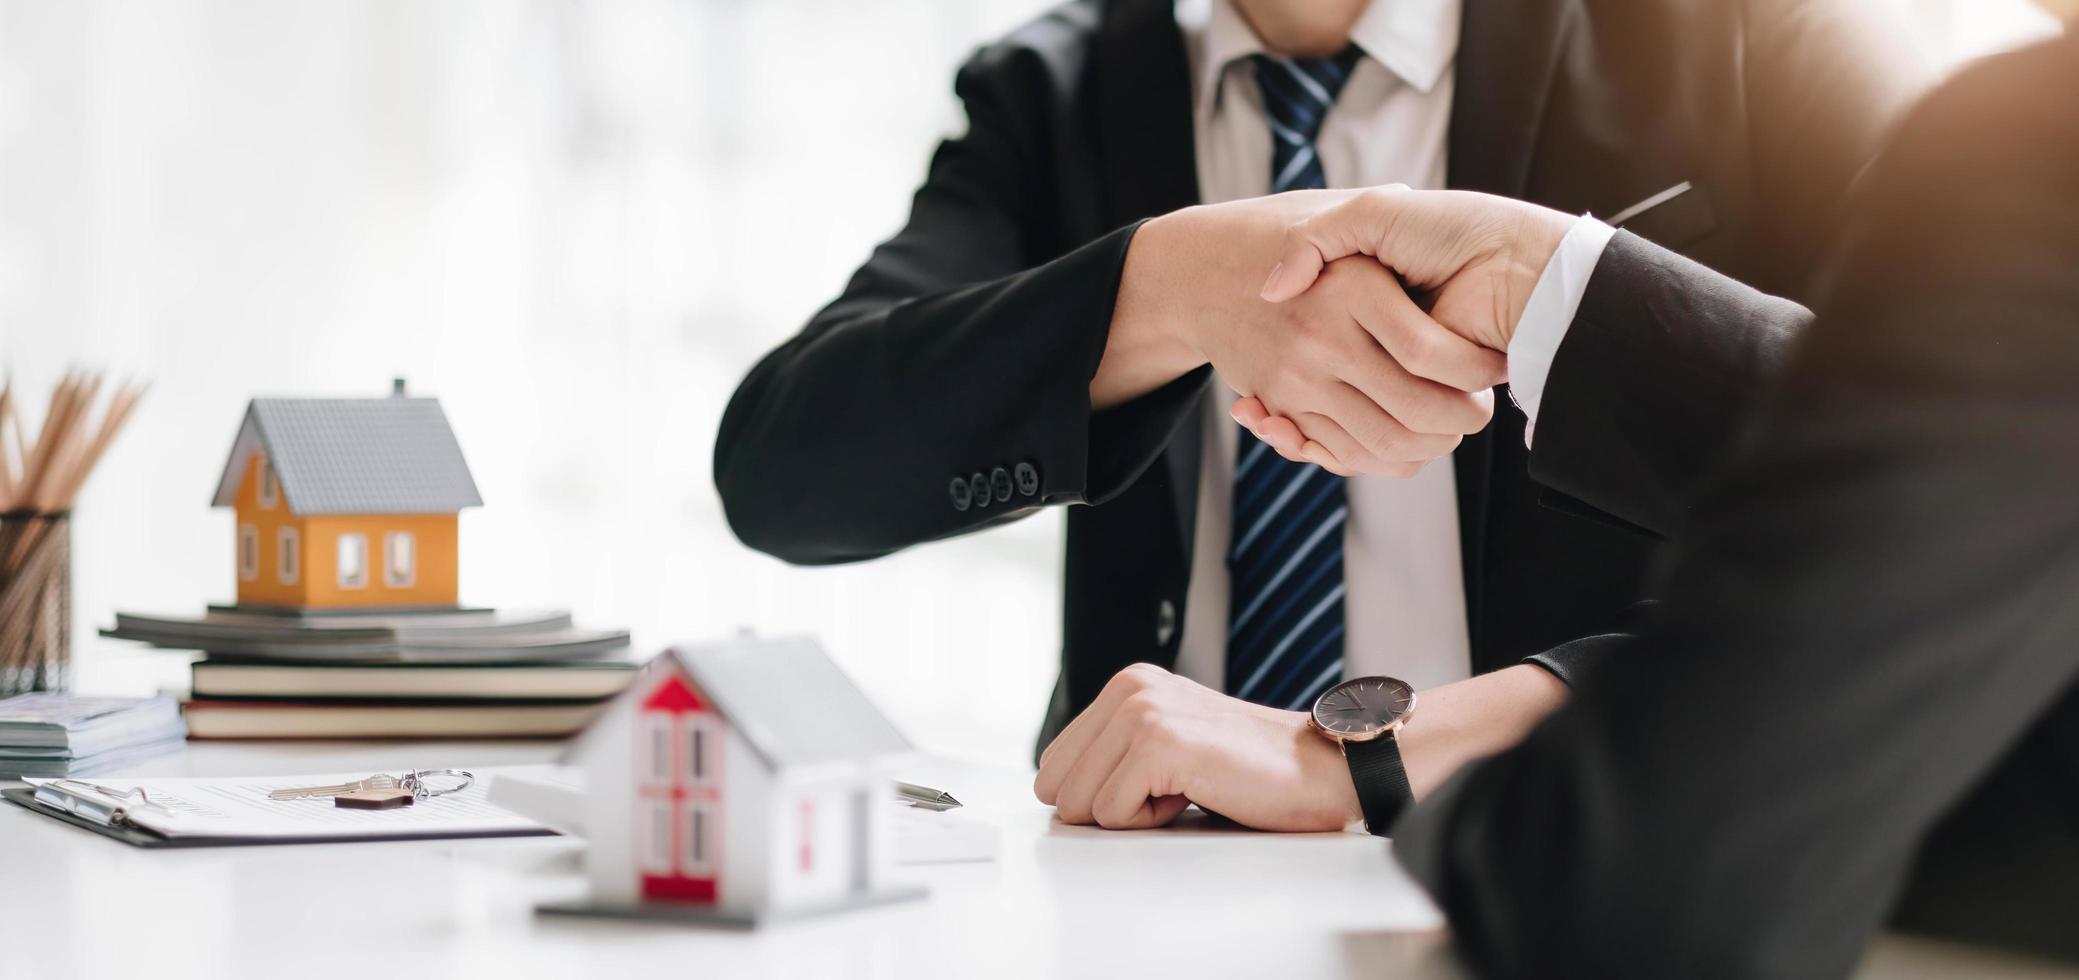 courtier immobilier et client se serrant la main après avoir signé un contrat immobilier, prêt immobilier et concept d'assurance photo